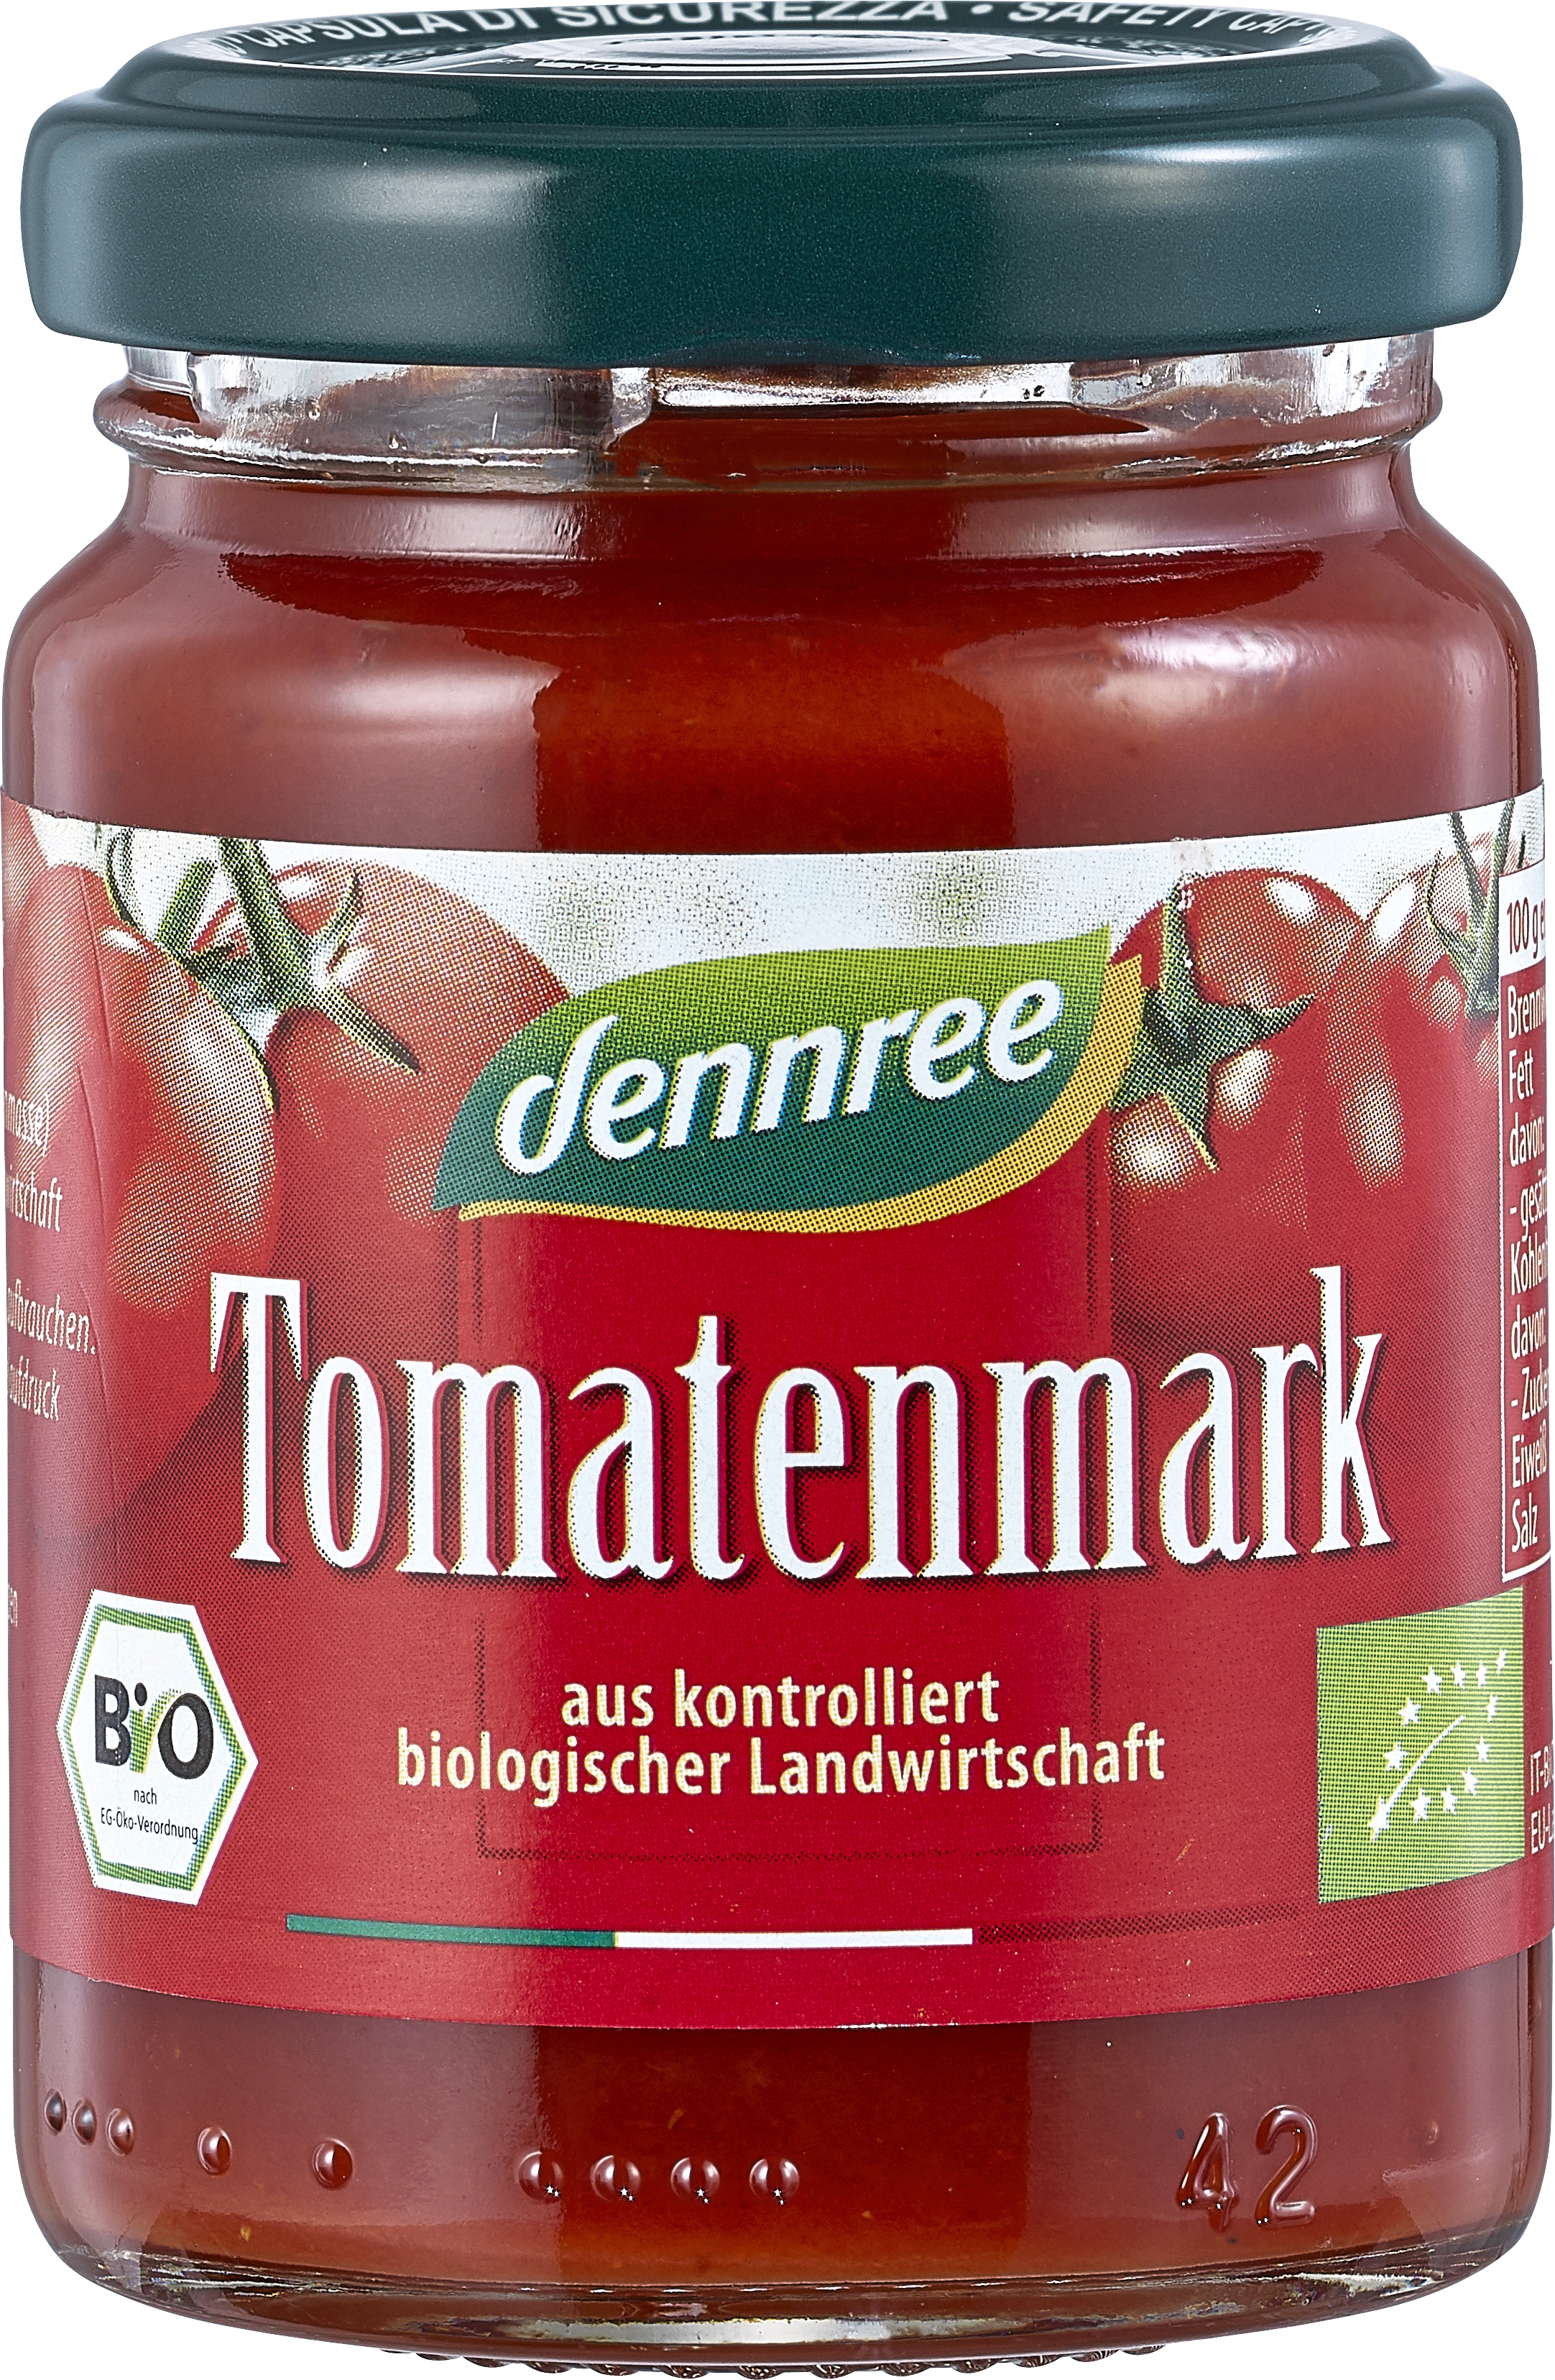 Tomatenmark im Glas, 100g